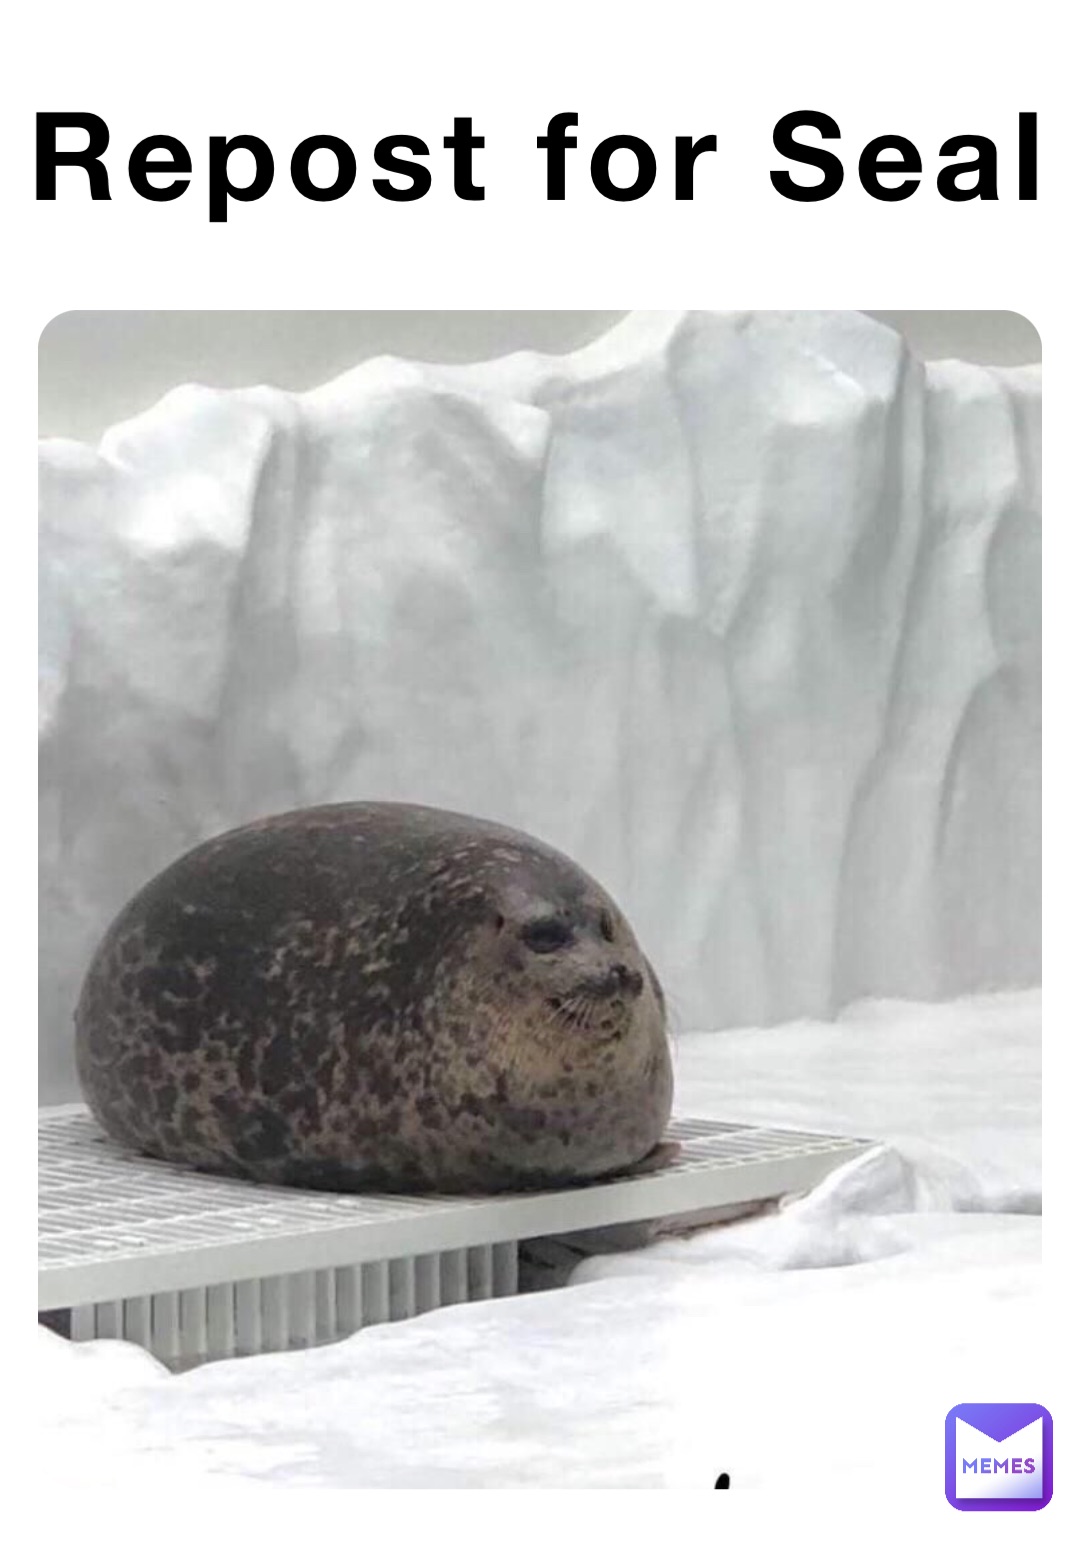 Repost for Seal